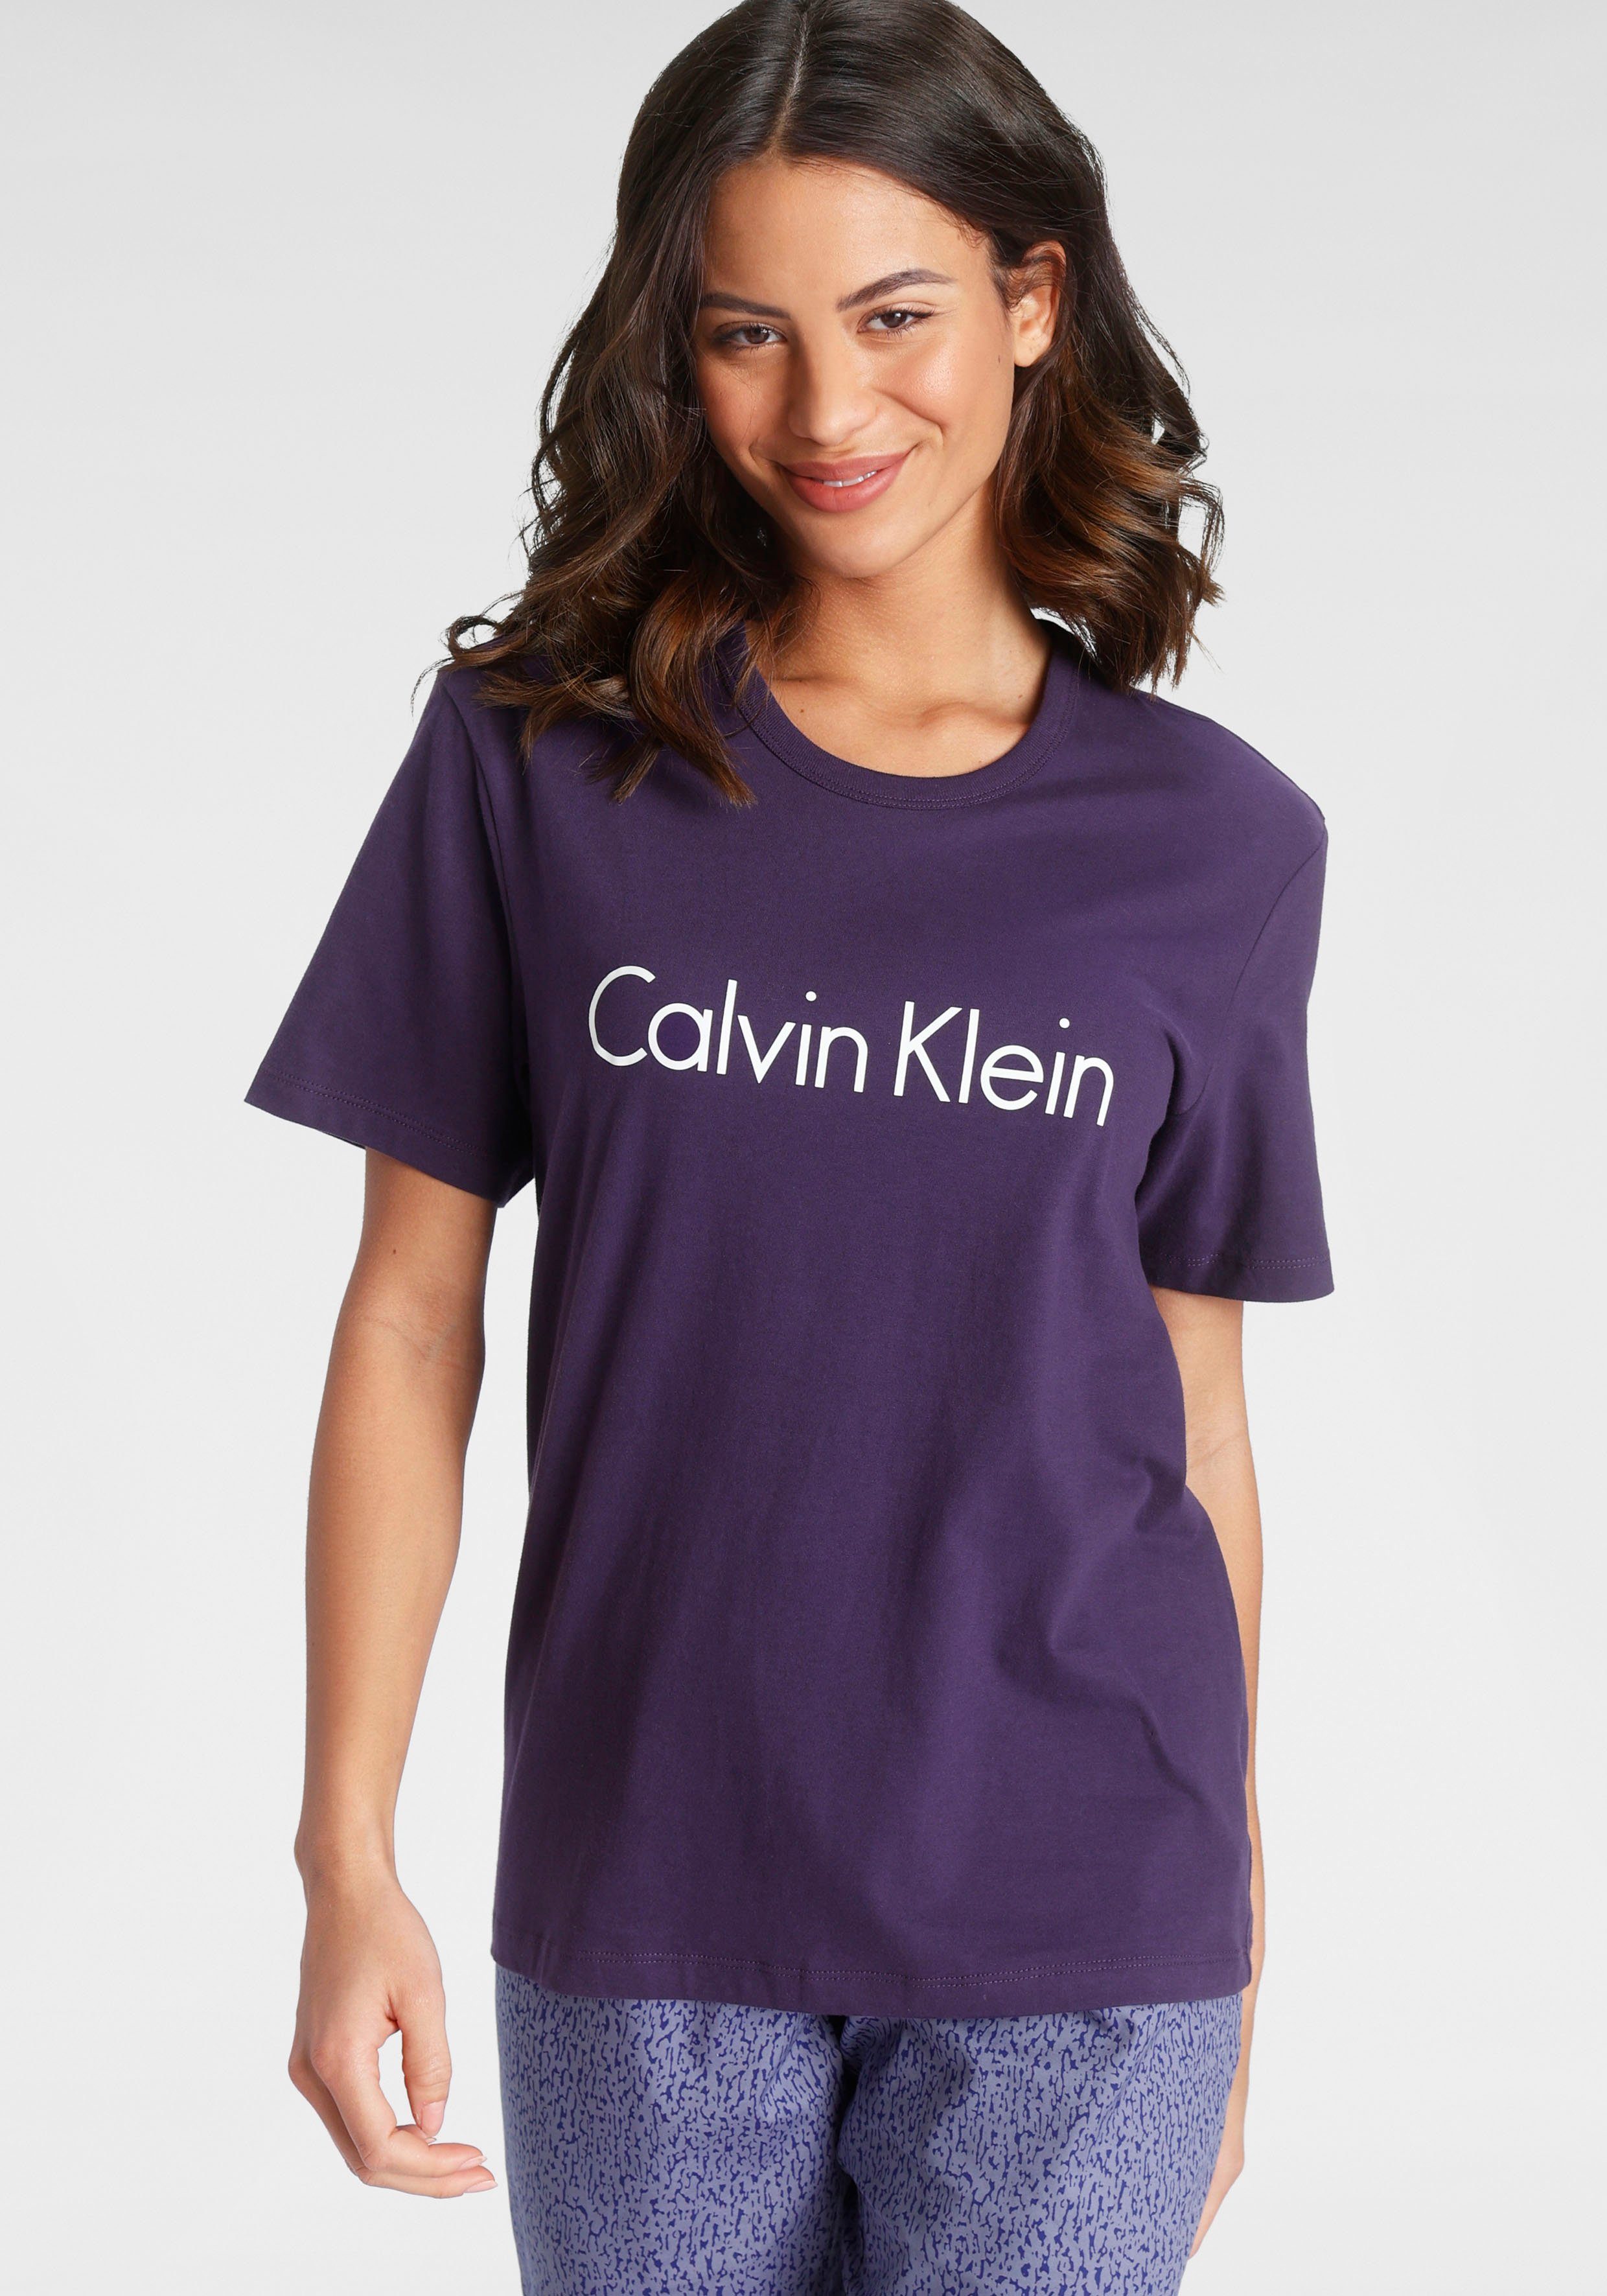 Calvin Klein Damenmode & Frauen-Mode online kaufen | OTTO